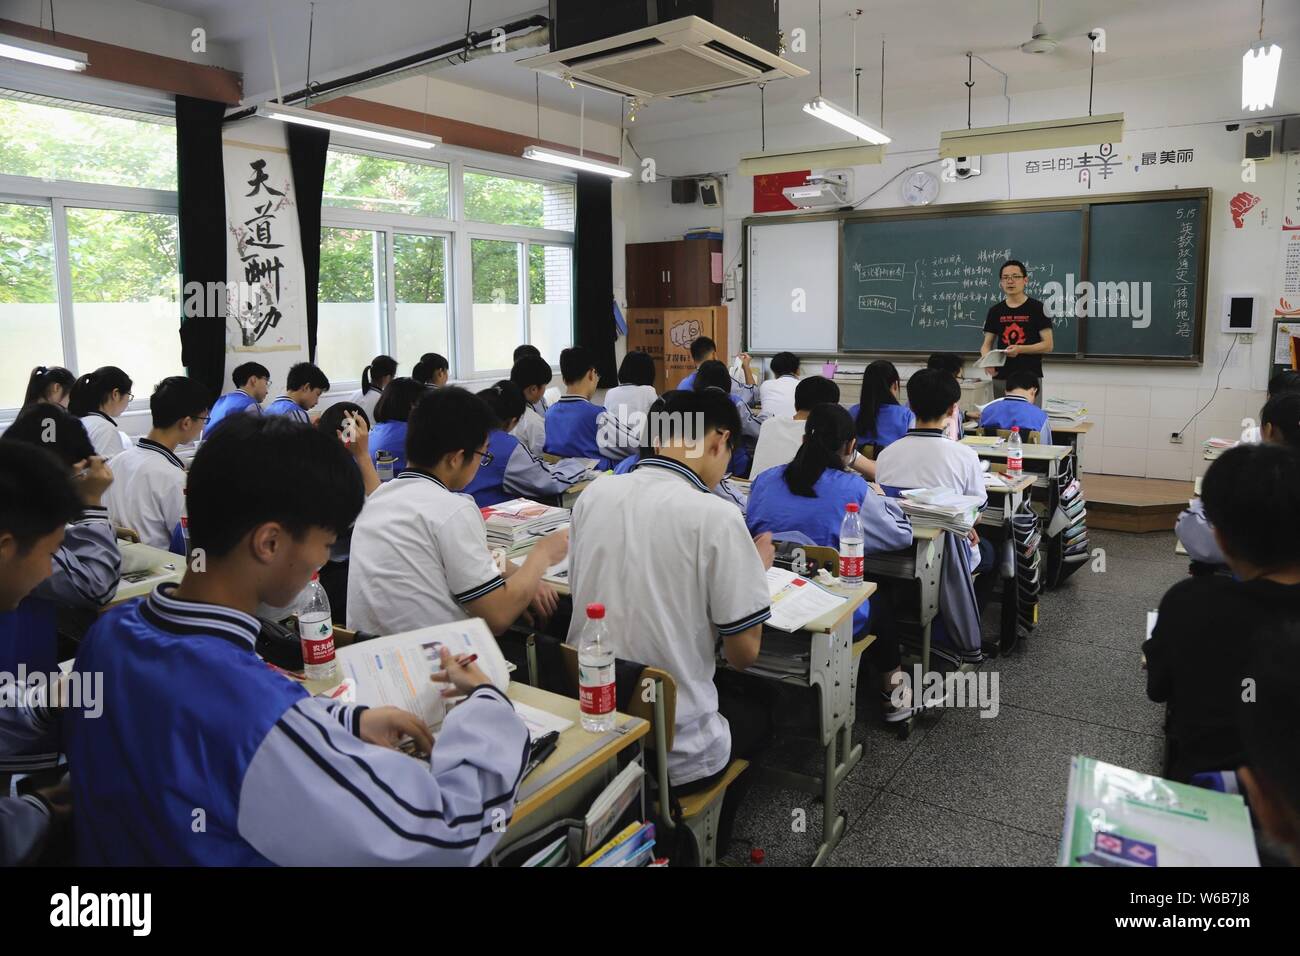 Les étudiants assistent à des cours dans une classe équipée d'une caméra de  surveillance dans une école secondaire de la ville de Hangzhou, Zhejiang  Province de Chine orientale, 15 mai 201 Photo